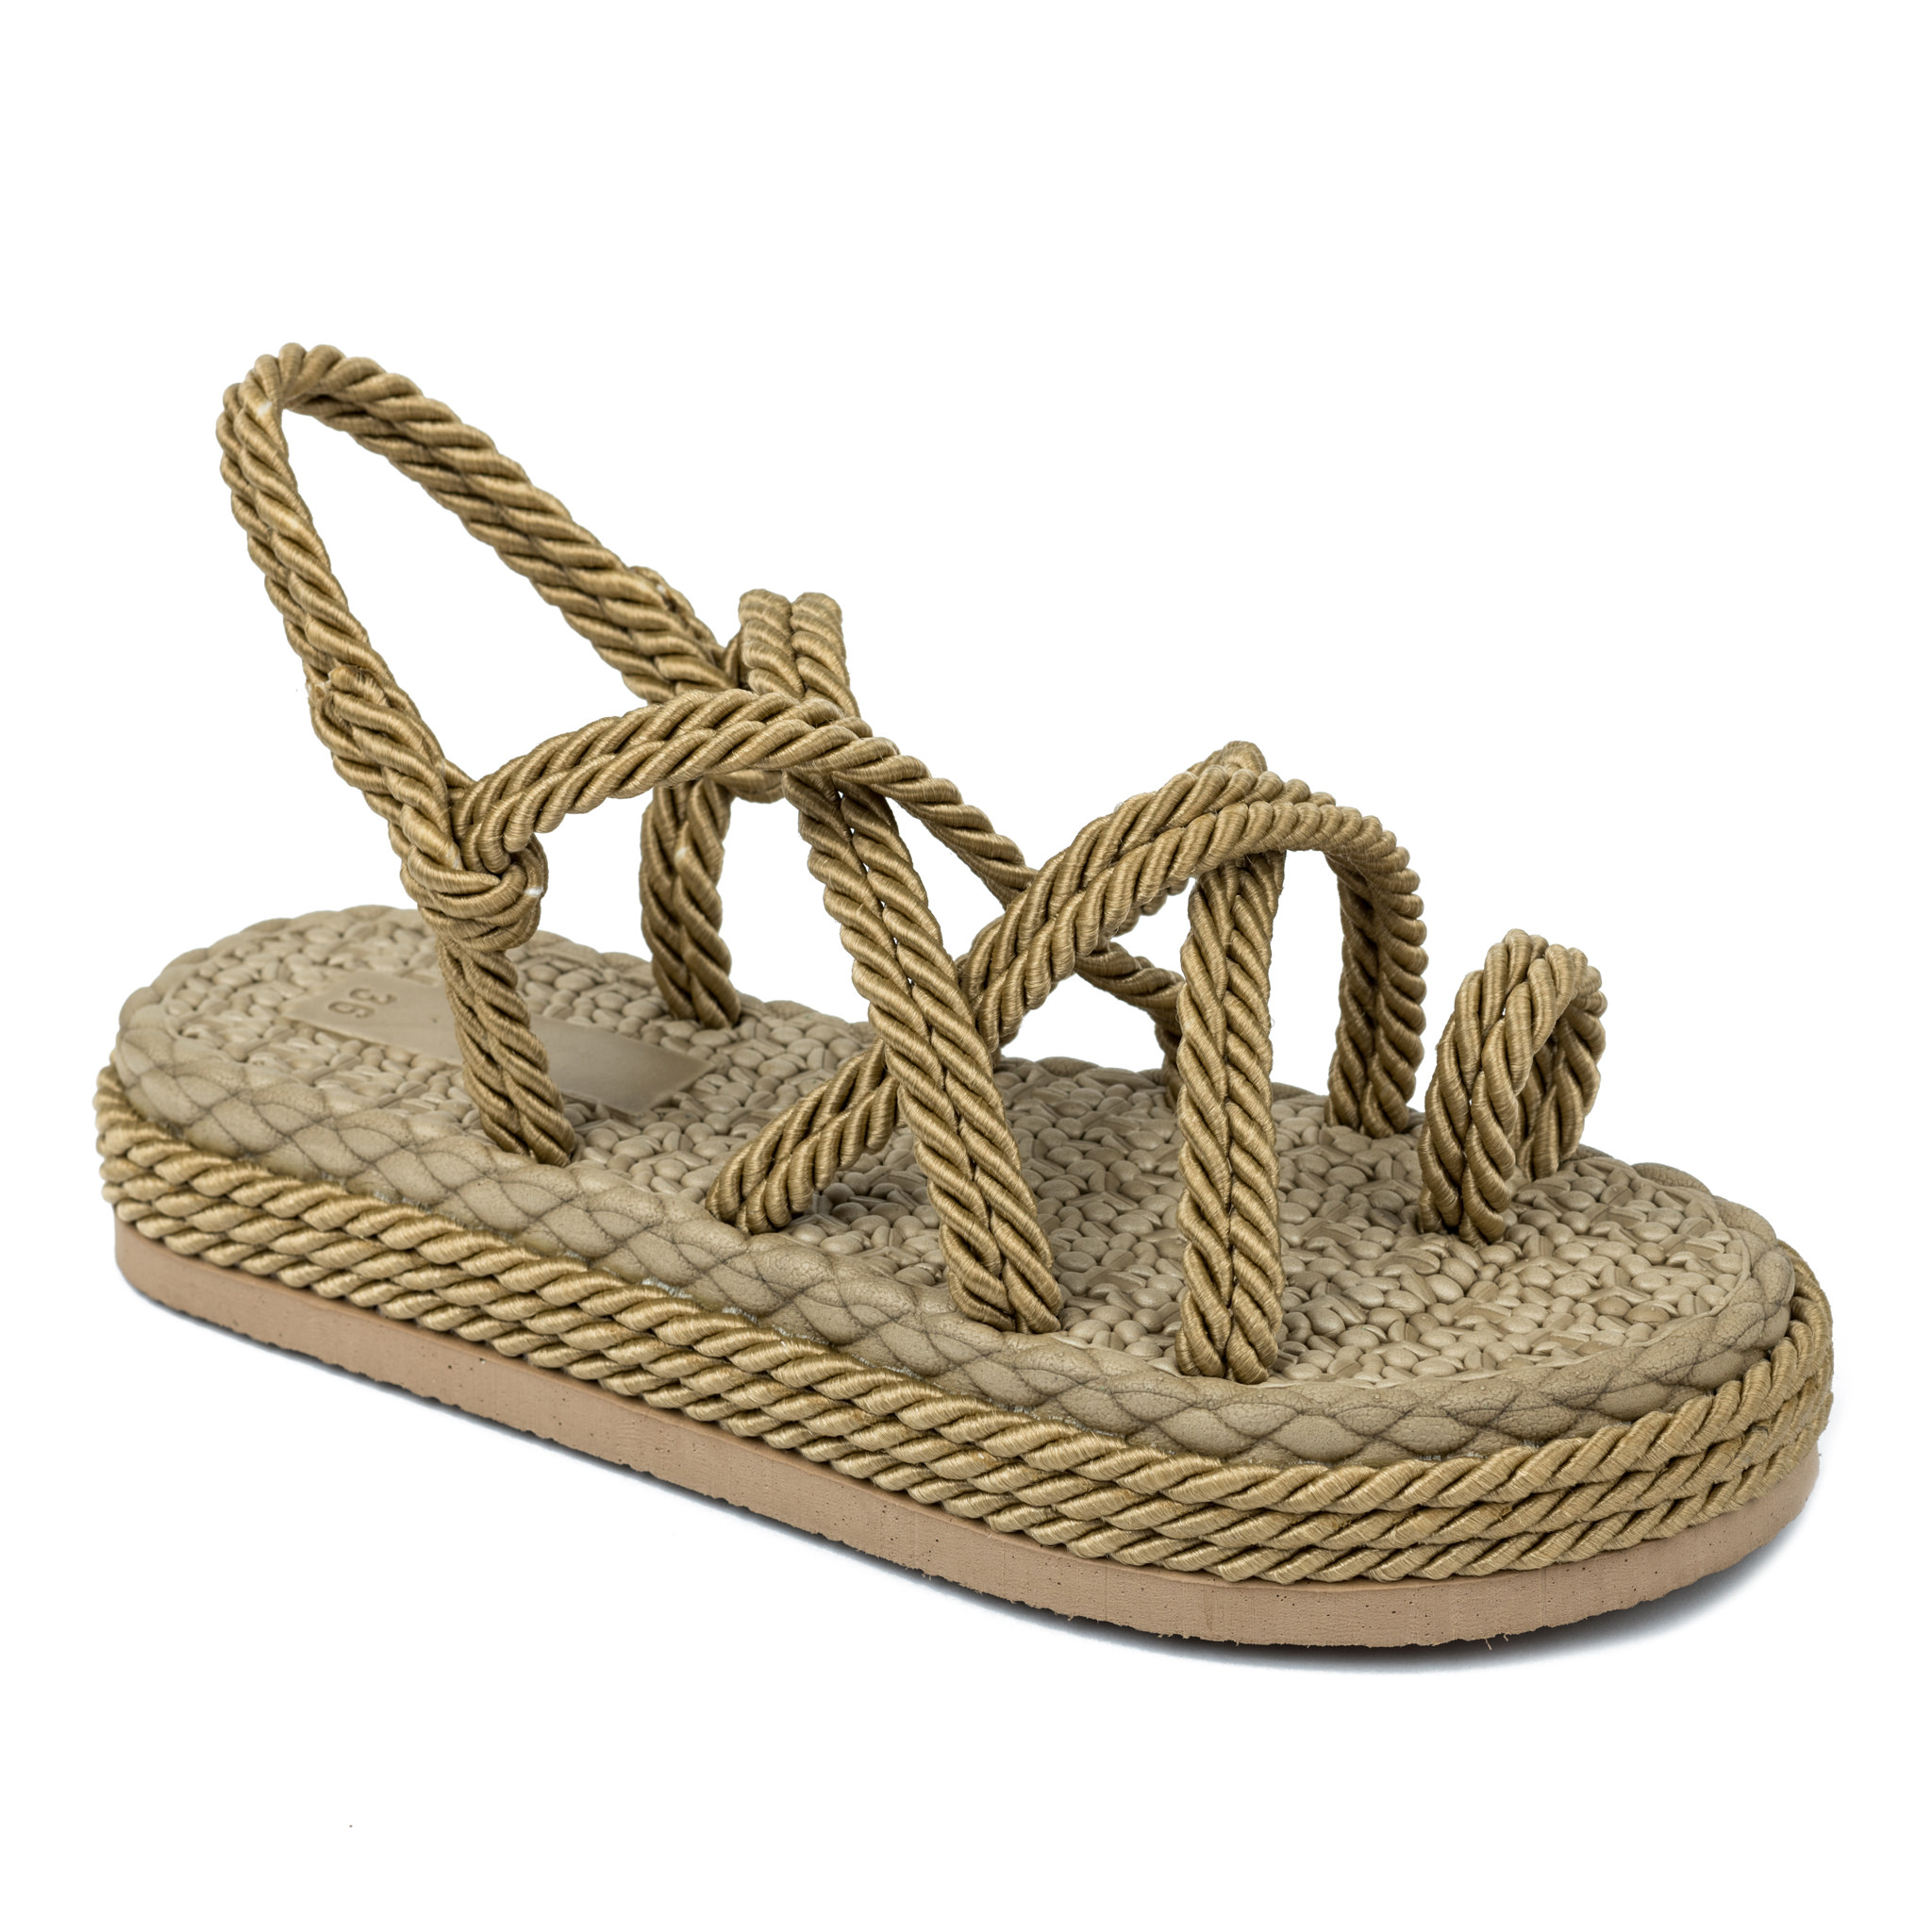 Women sandals A333 - GOLD